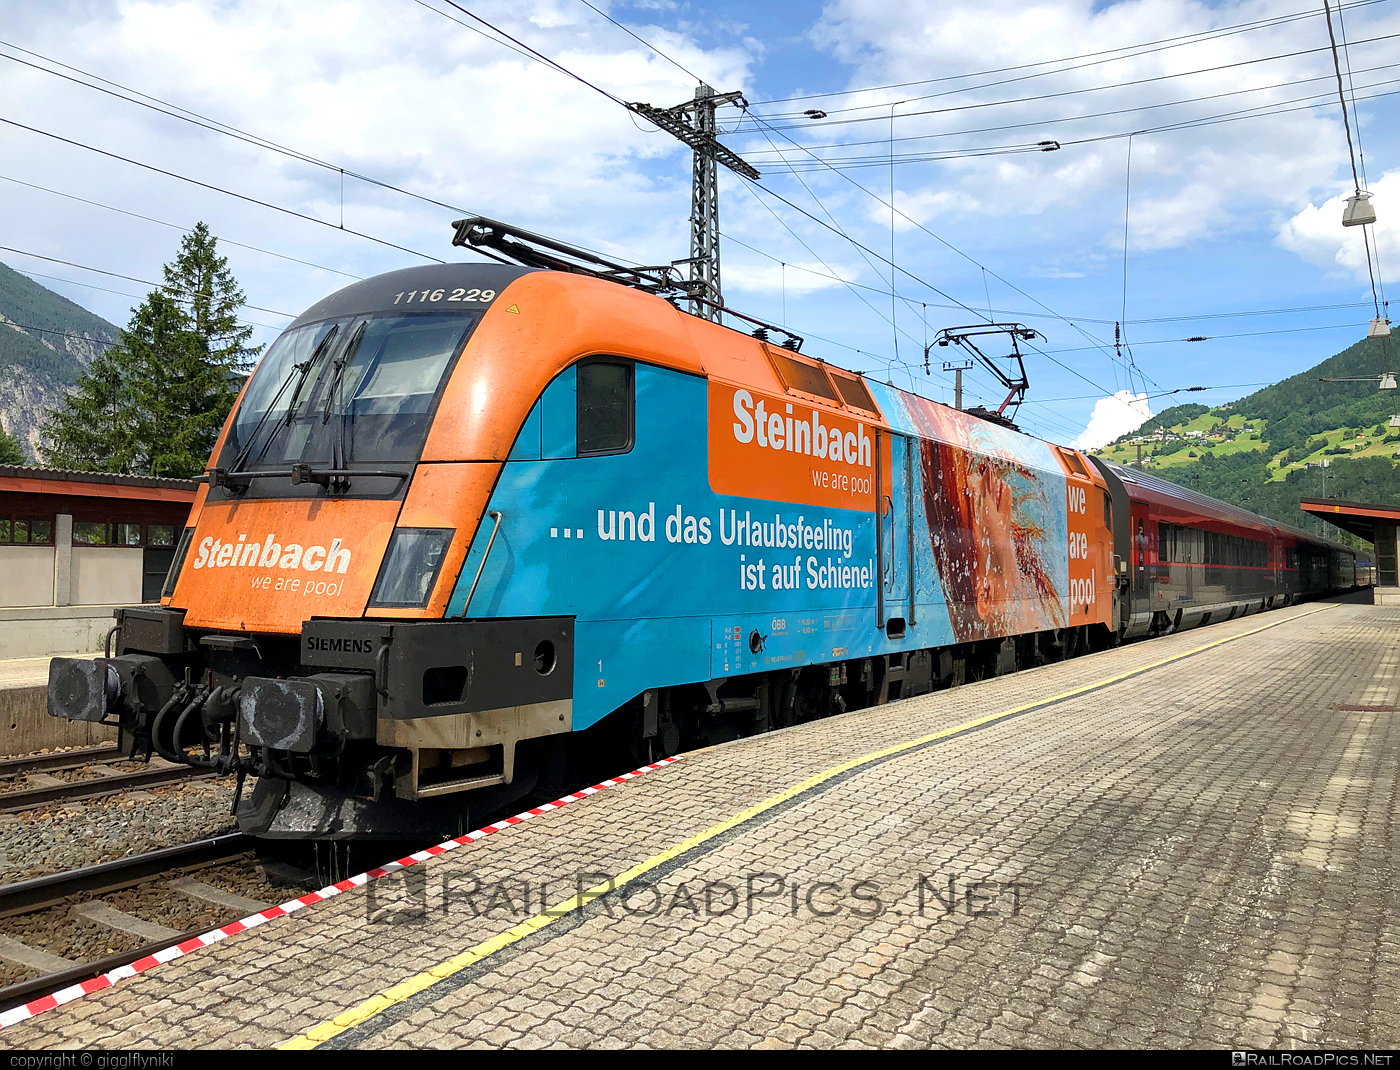 Siemens ES 64 U2 - 1116 229 operated by Österreichische Bundesbahnen #es64 #es64u2 #eurosprinter #obb #osterreichischebundesbahnen #siemens #siemensEs64 #siemensEs64u2 #siemenstaurus #taurus #tauruslocomotive